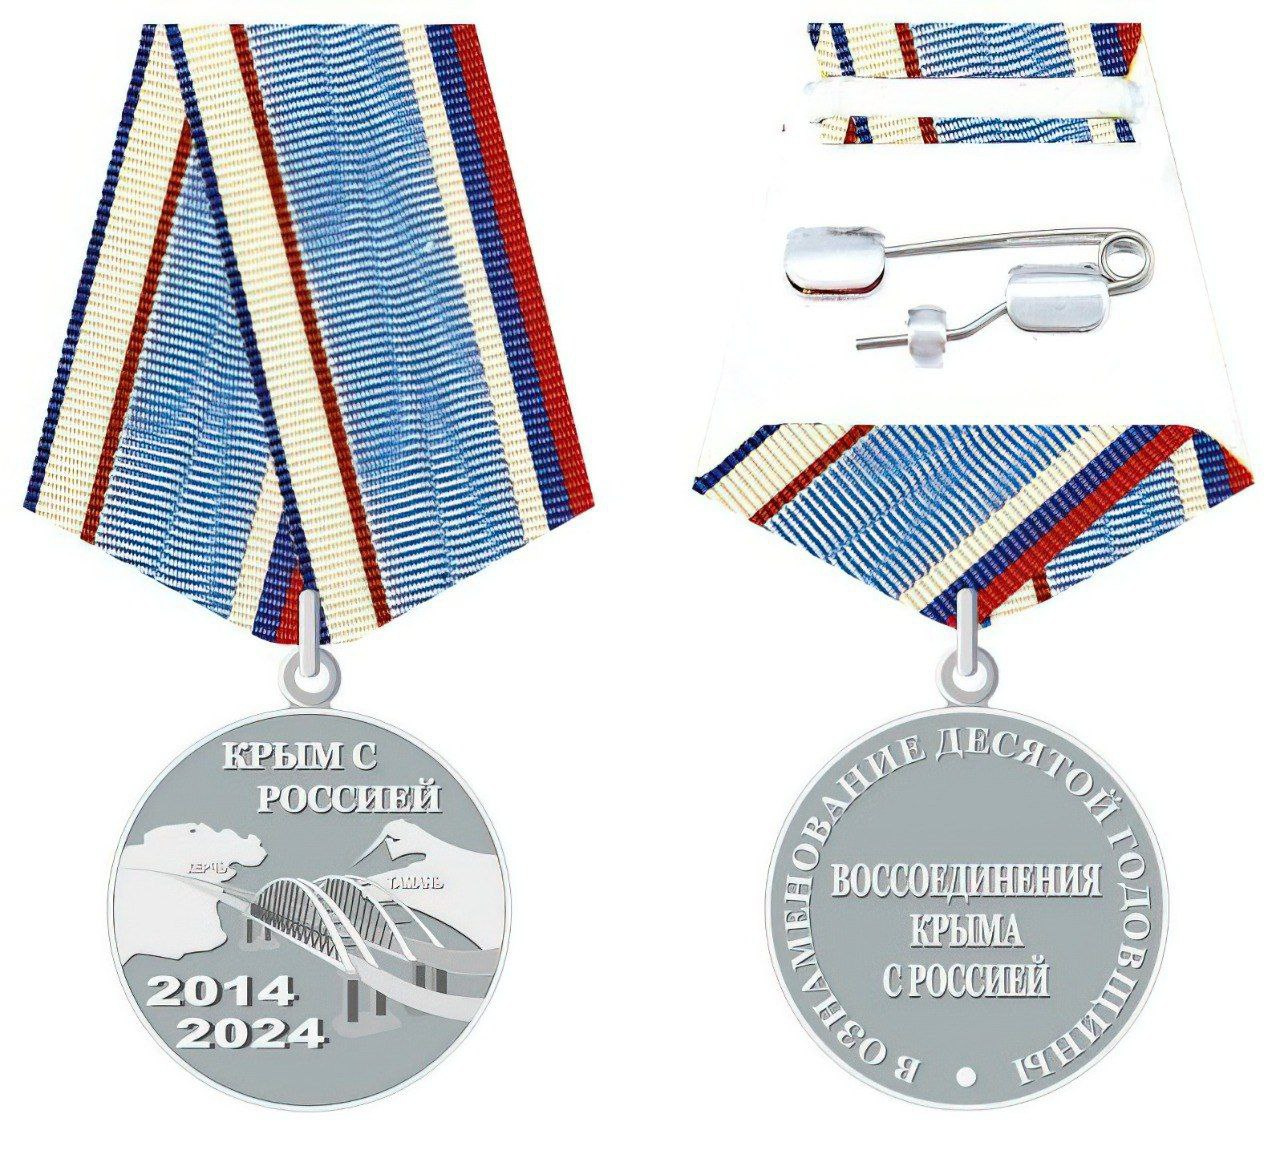 В Крыму показали образец юбилейной медали в честь годовщины присоединения к России